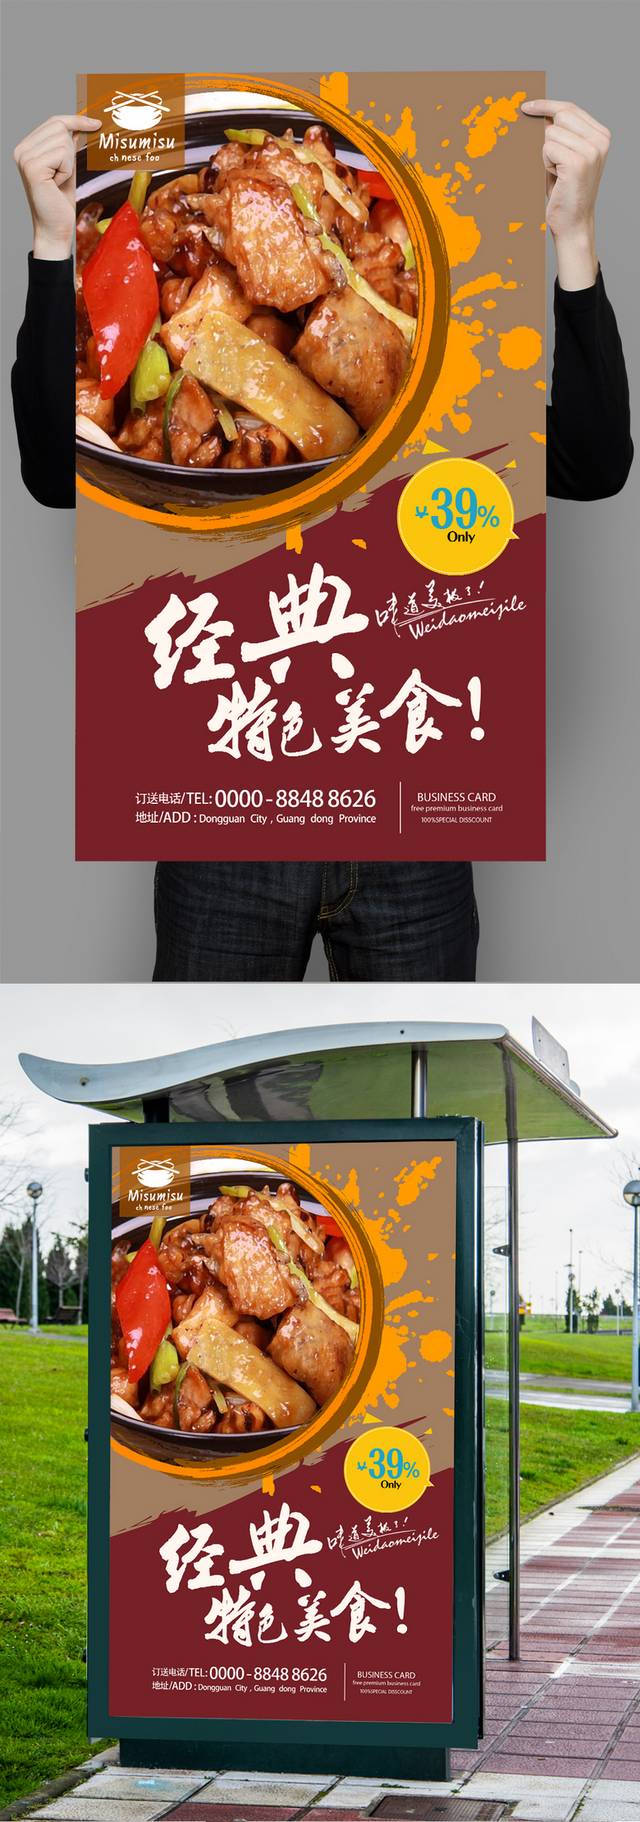 经典黄焖鸡米饭促销海报设计